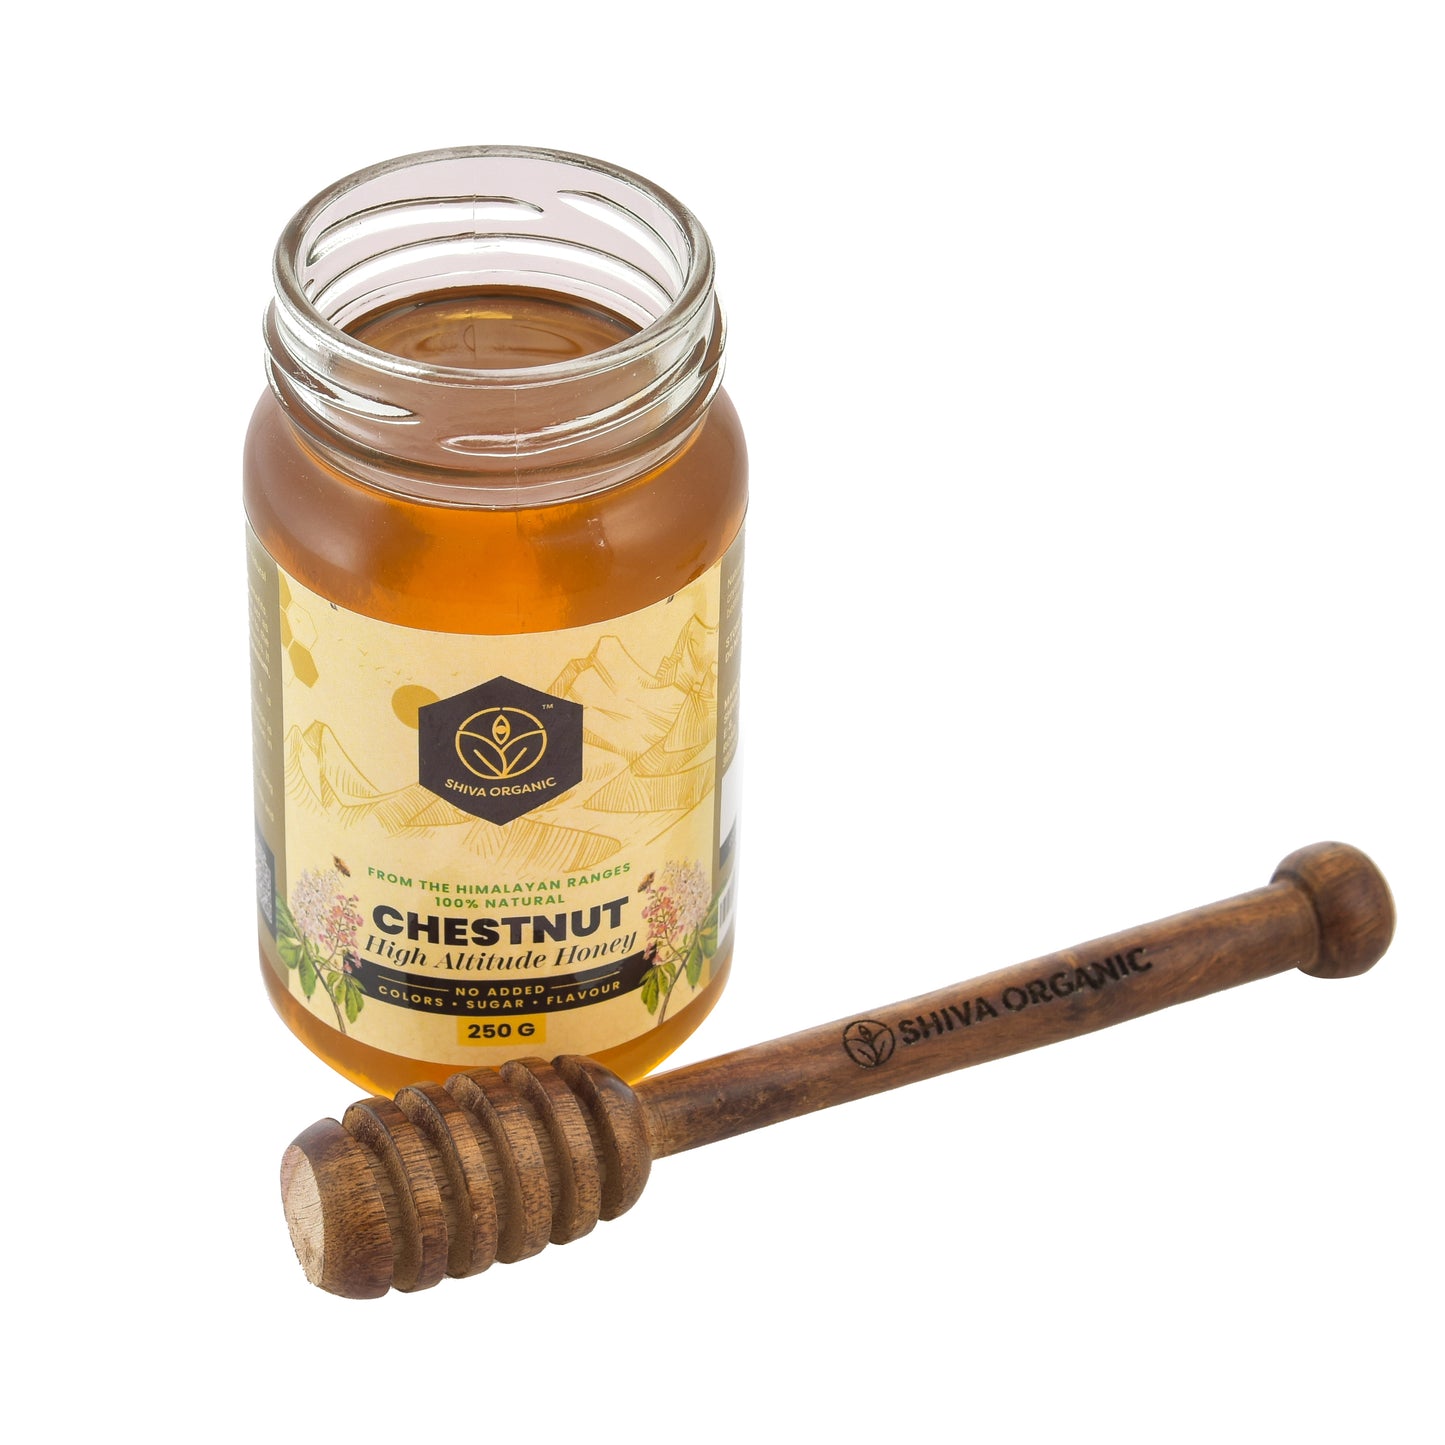 Chestnut Honey | Shiva Organic